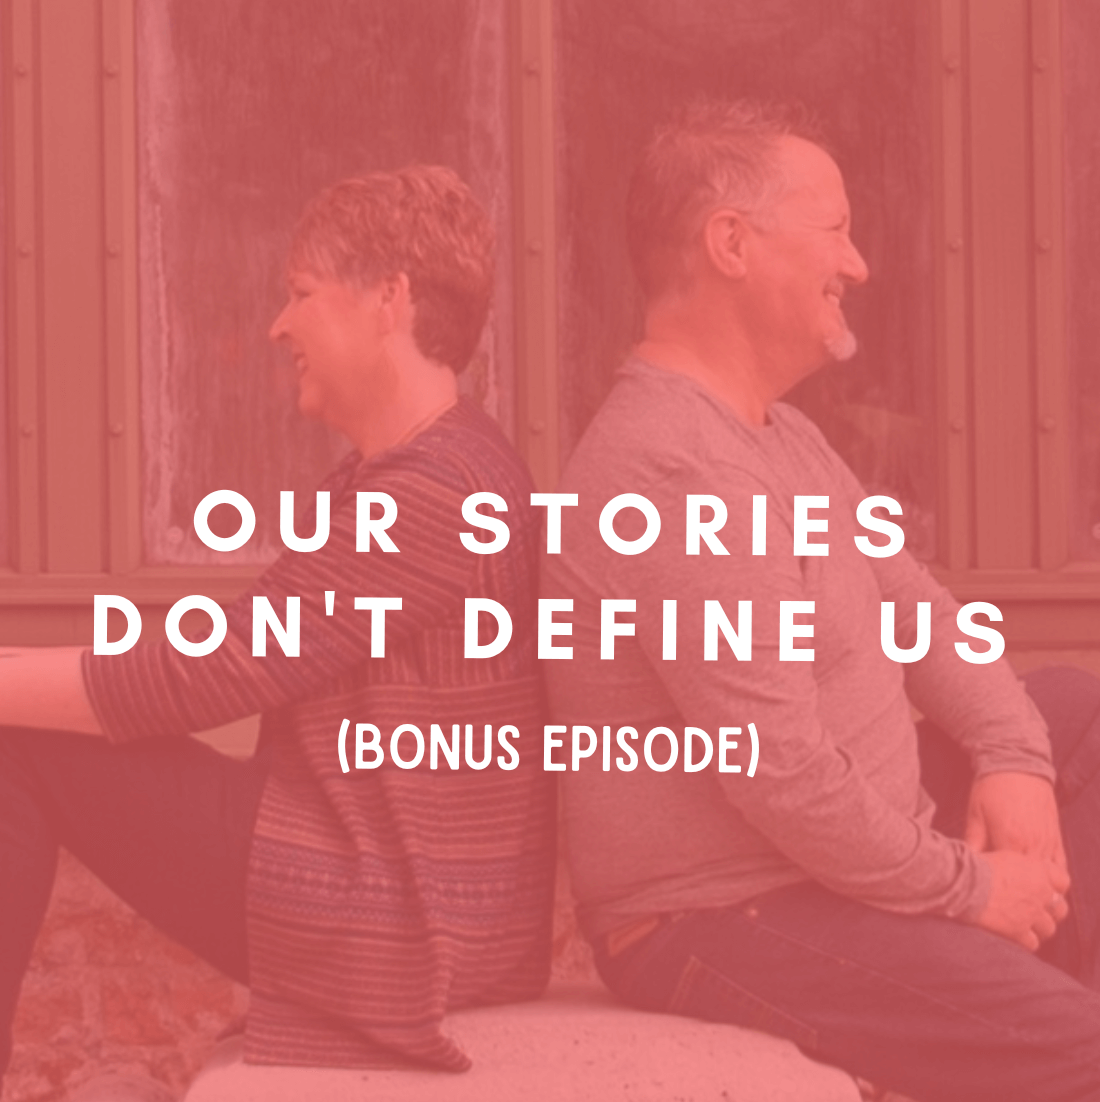 BONUS: Our Stories Don’t Define Us